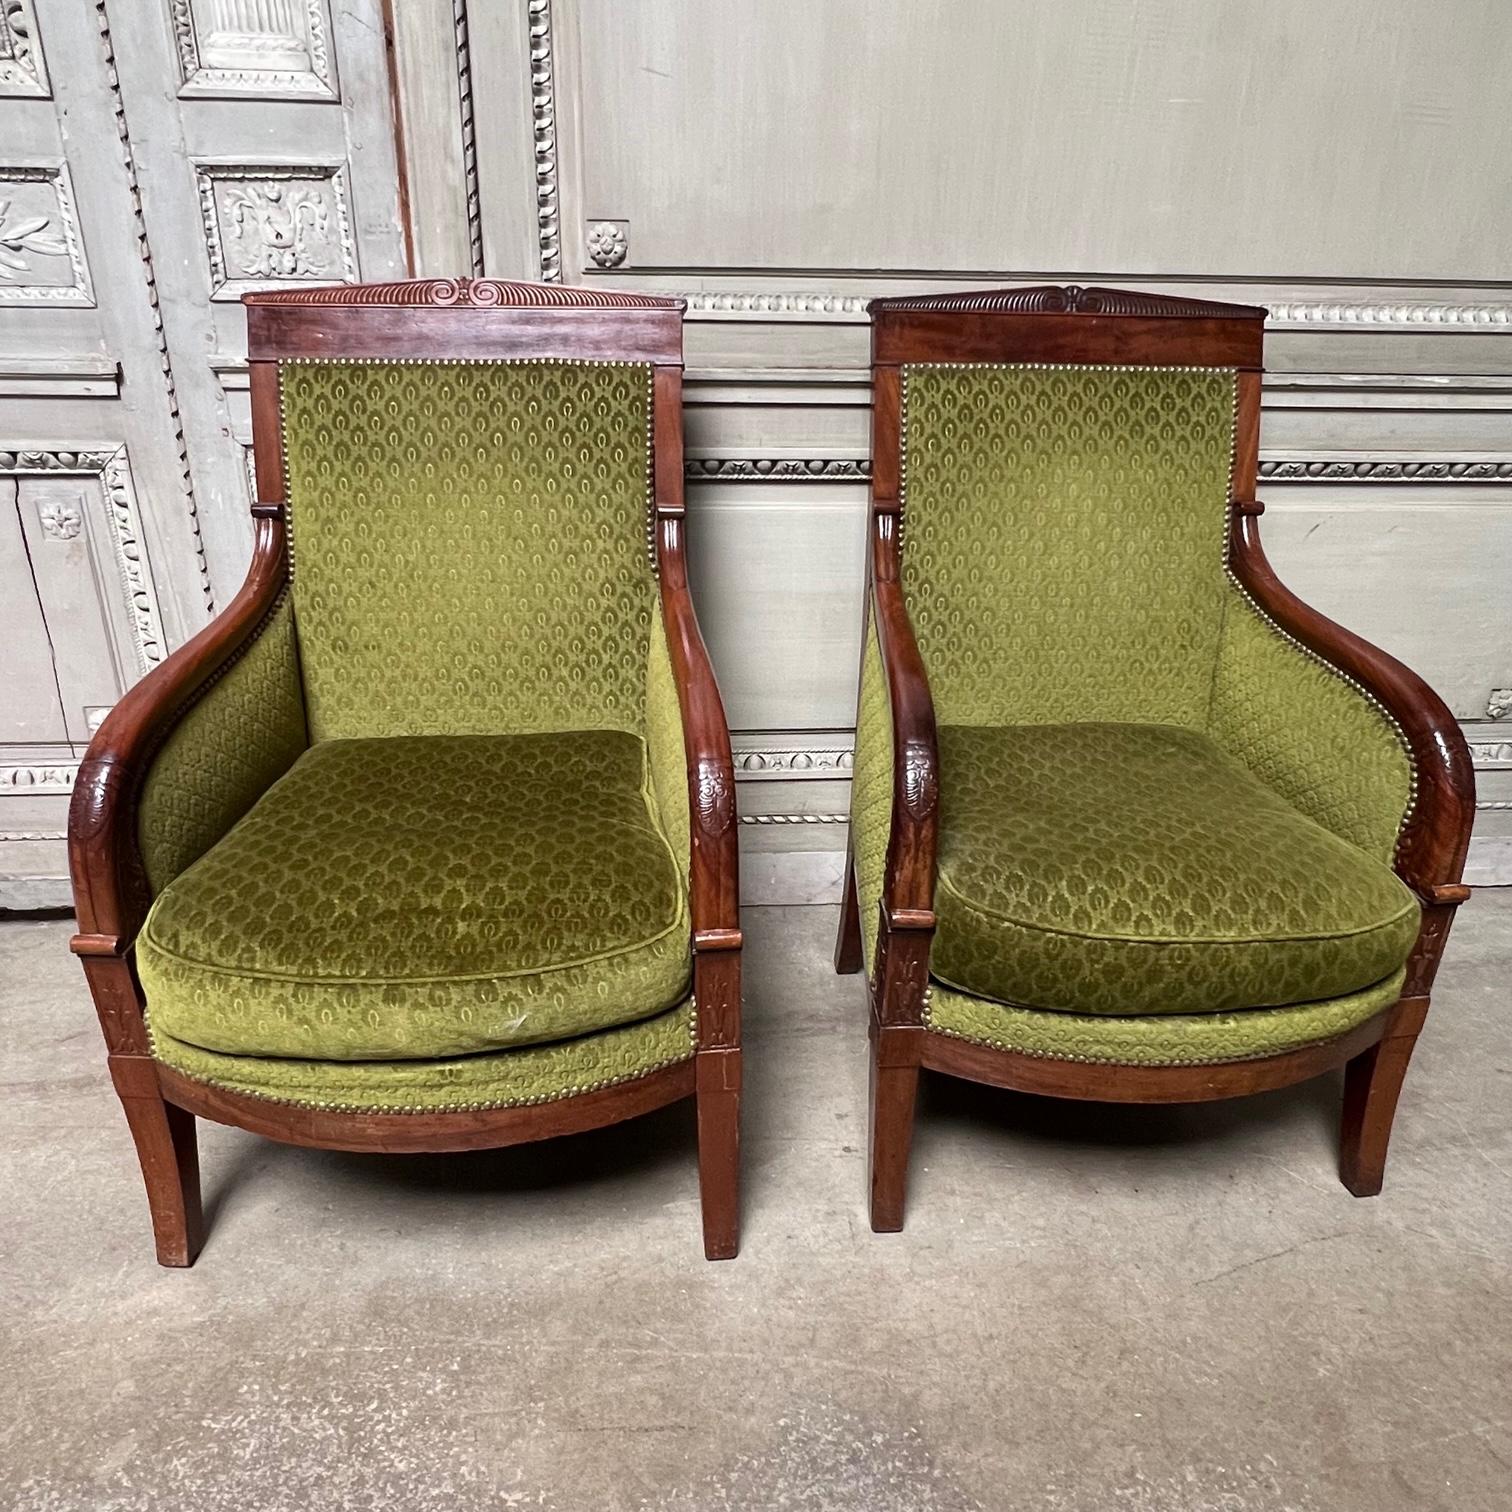 Dieses Paar französischer geschnitzter Mahagoni Charles X beregeres, Sessel sind größer als die meisten aus dieser Zeit und sind schön geschnitzt und elegant mit einem späten neoklassischen Stil. Diese Sessel stammen aus dem frühen 19. Jahrhundert